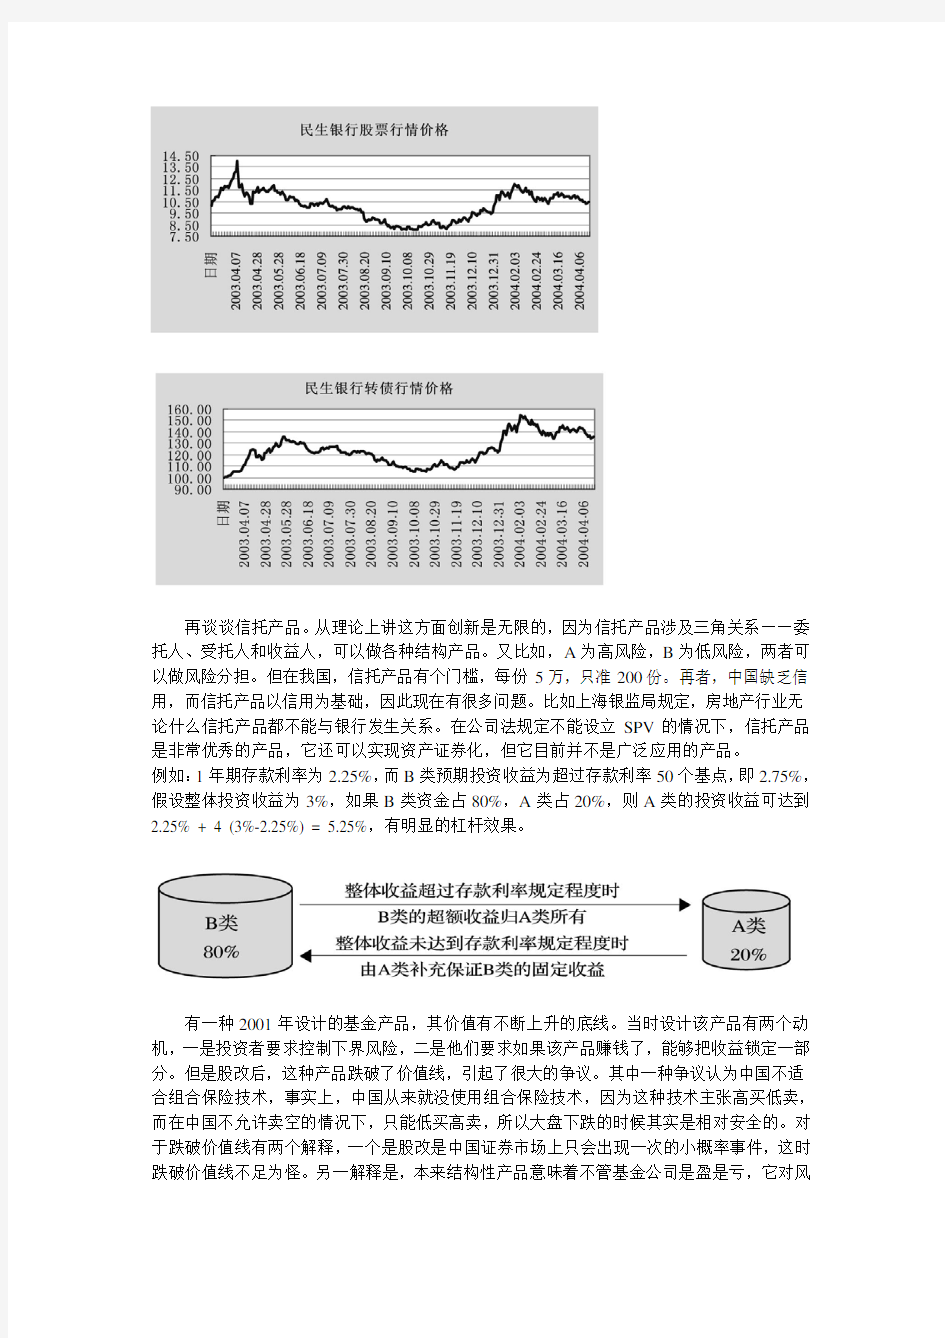 中国金融衍生品市场发展现状及存在问题